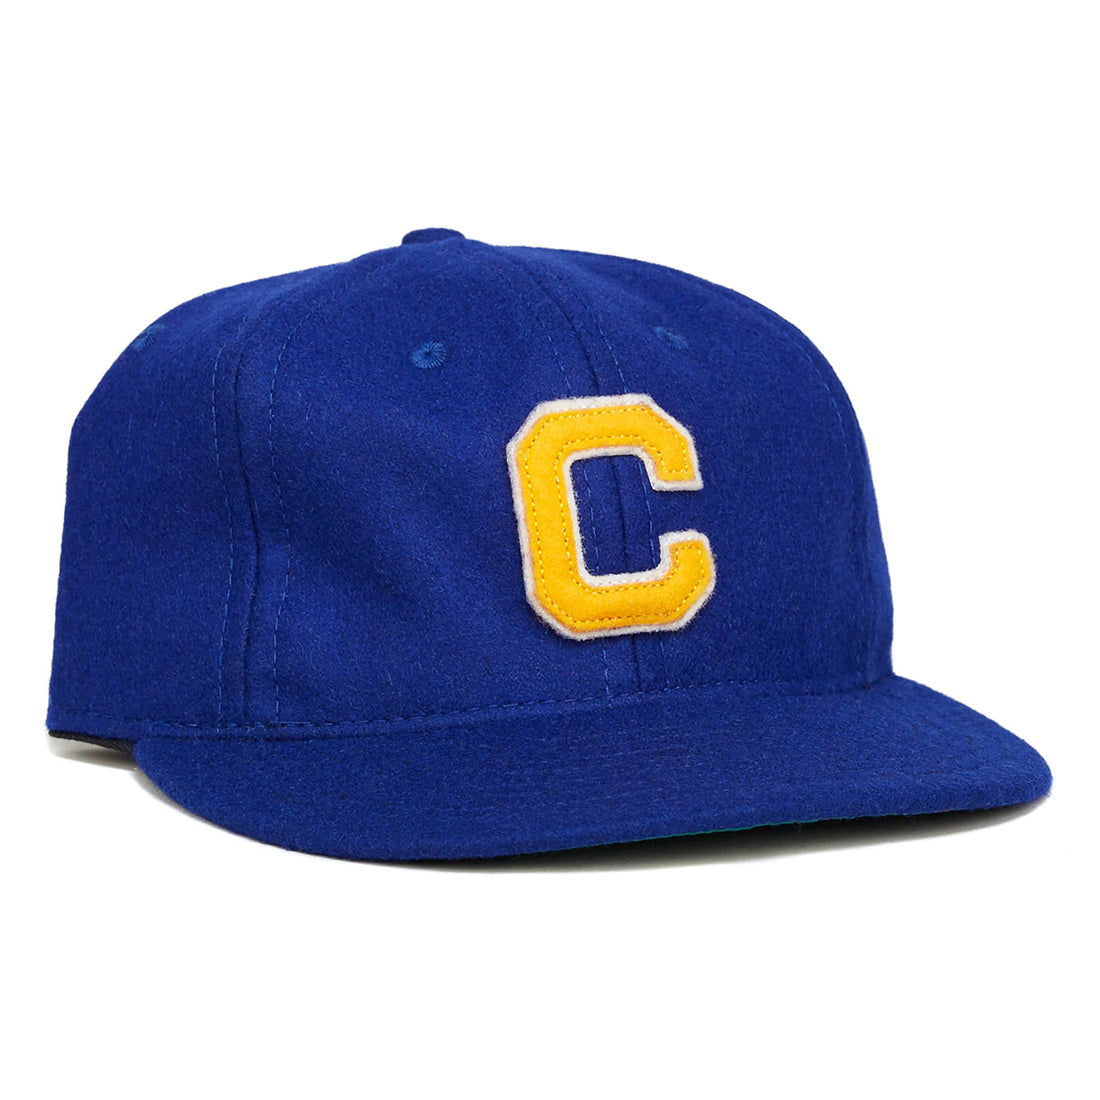 UCLA 1939 Vintage Ballcap – Ebbets Field Flannels